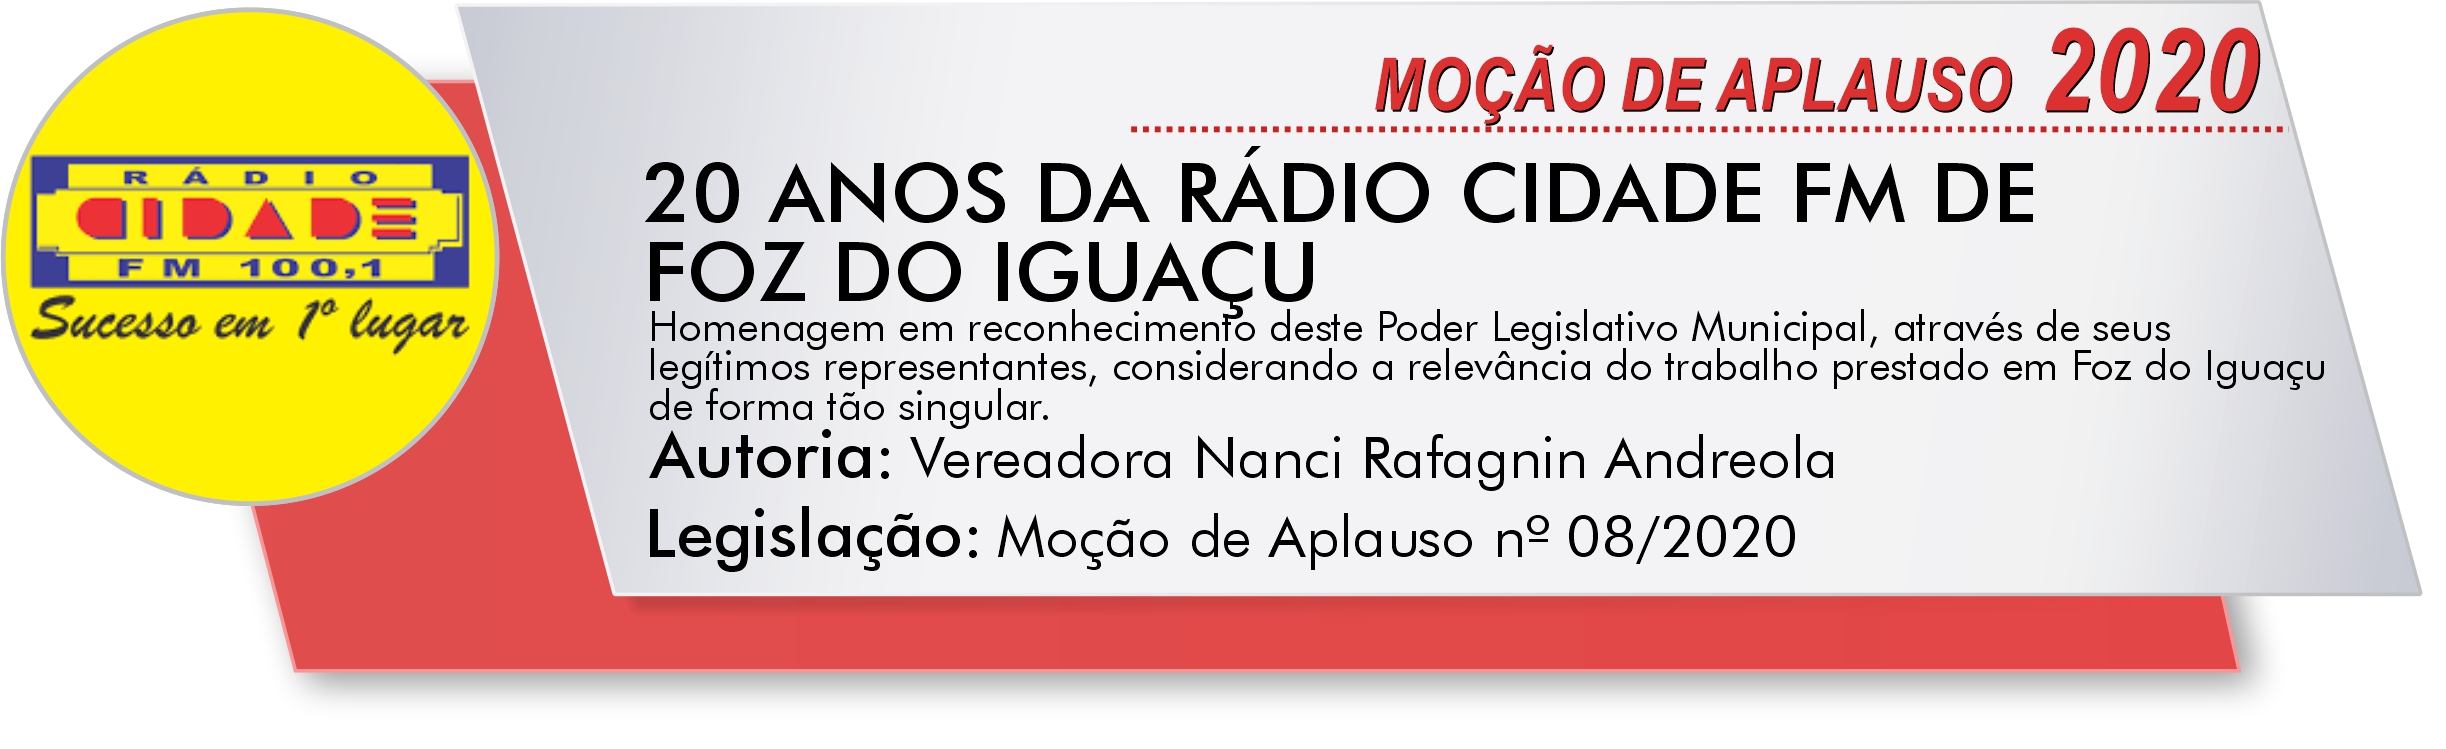 RÁDIO CIDADE FM DE FOZ DO IGUAÇU